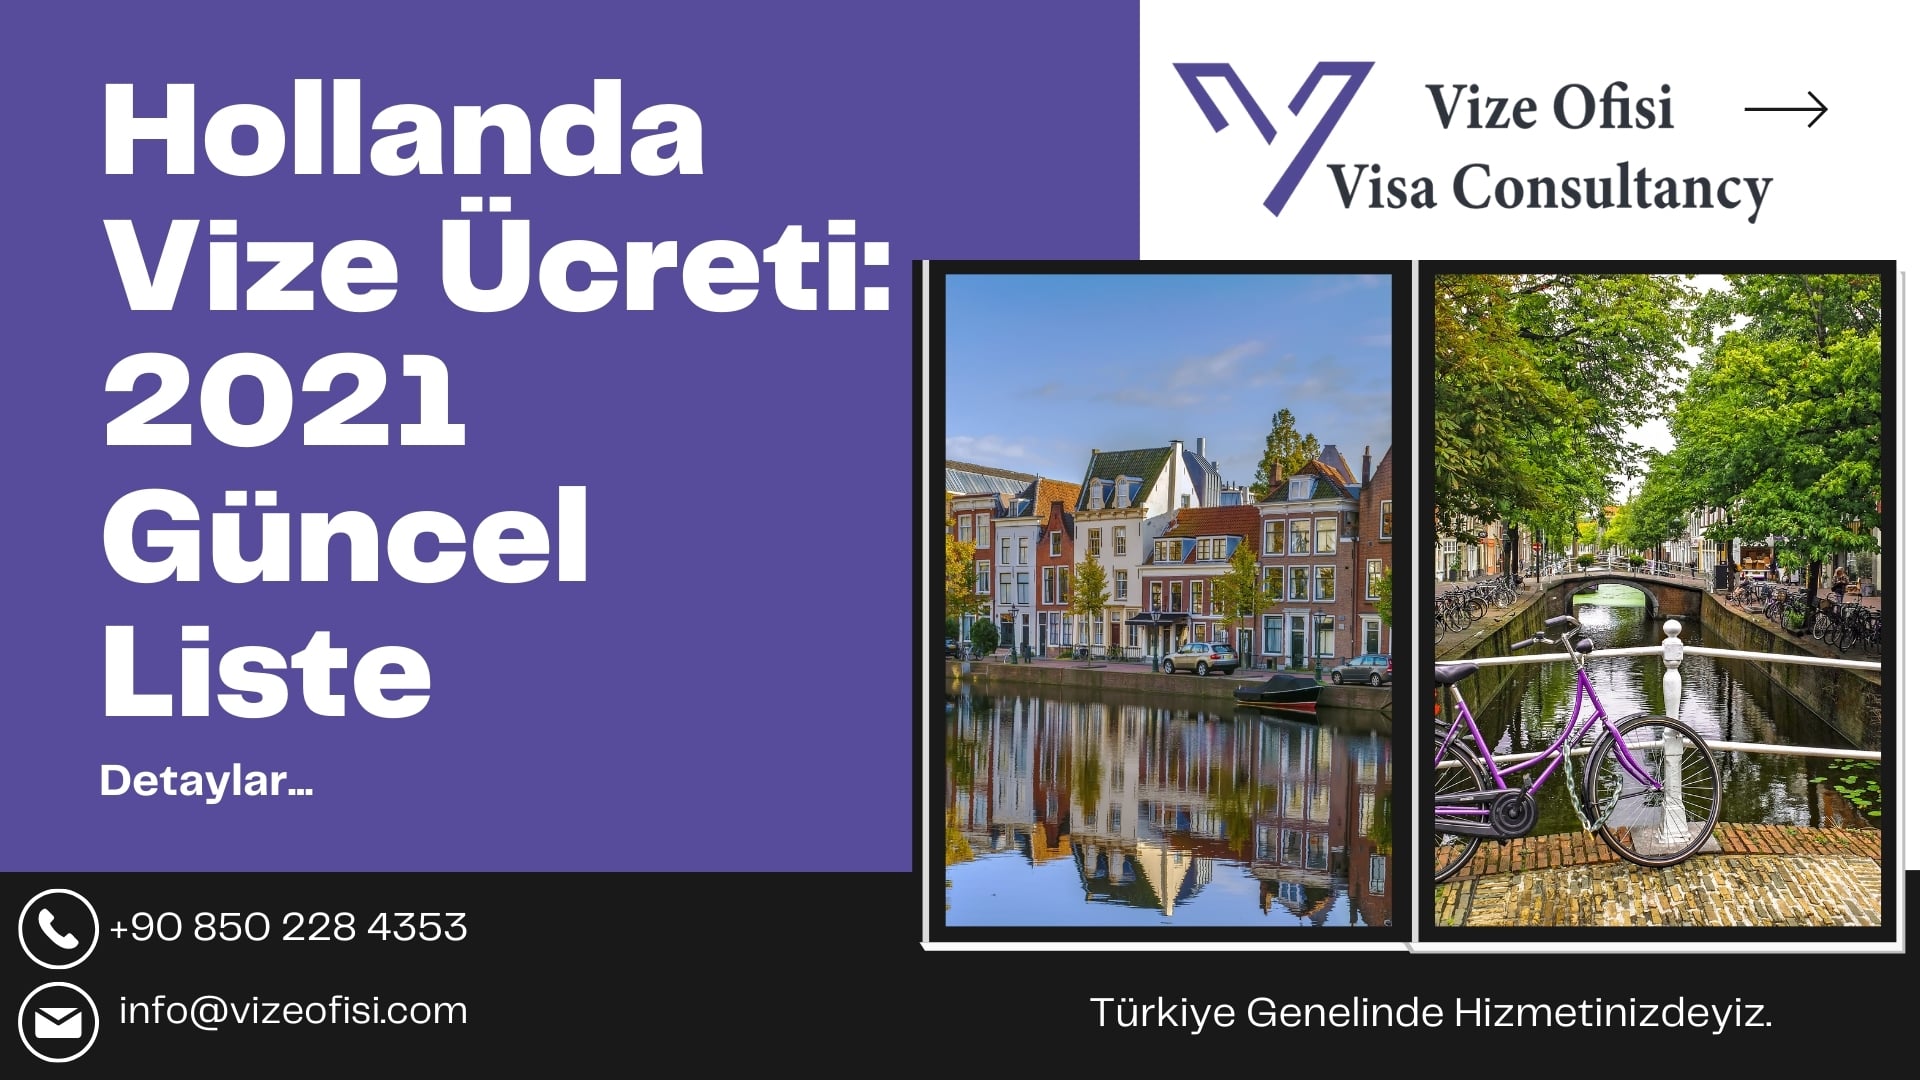 Hollanda Vize Ücreti – VFS Global Hollanda Vize Ücreti